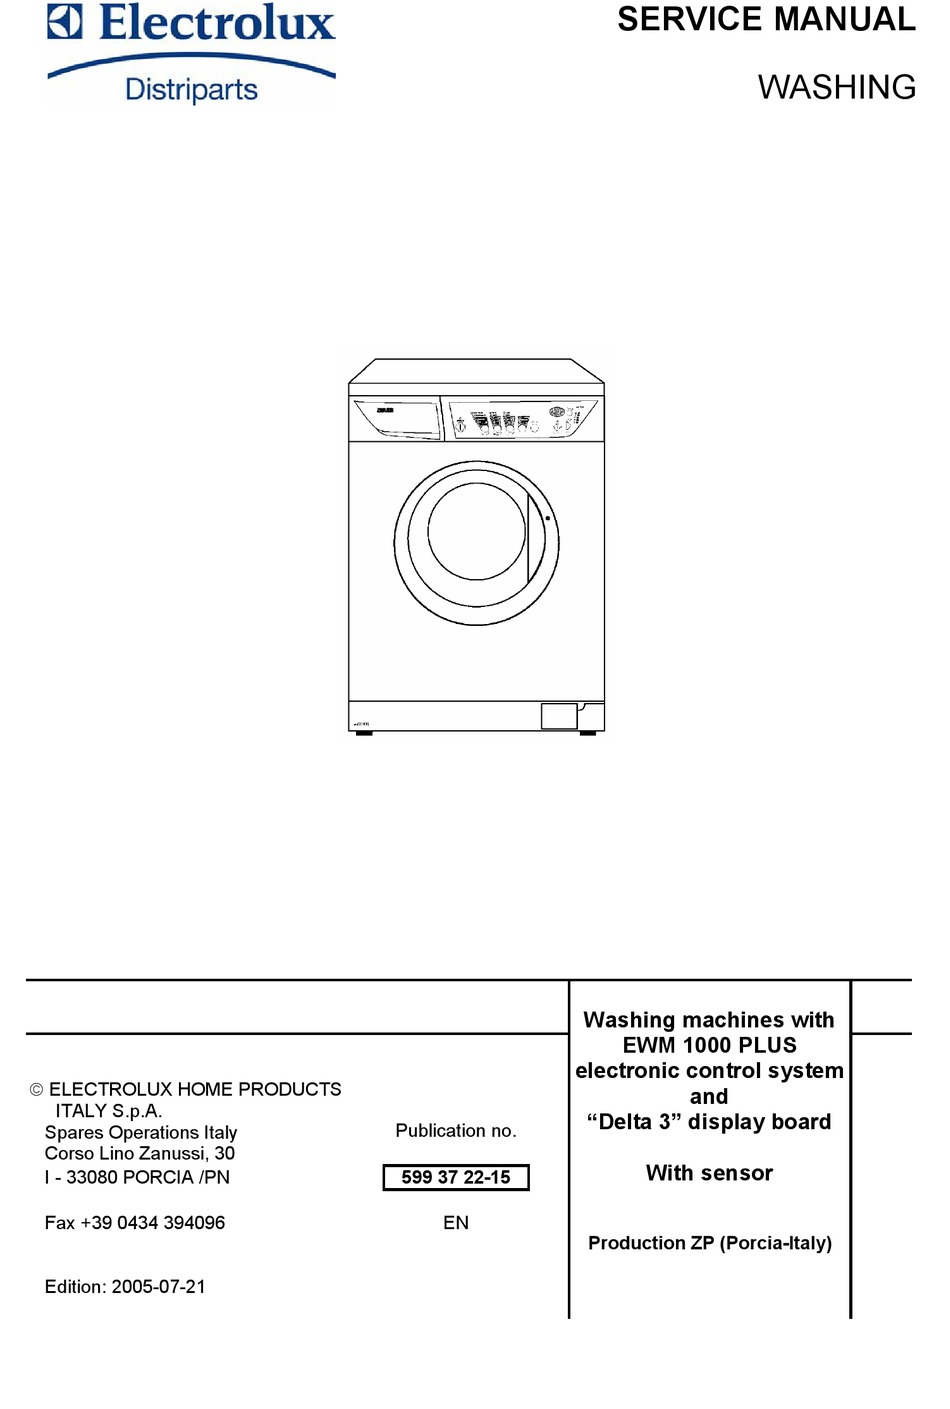 Инструкция по эксплуатации стиральной машины Electrolux с вертикальной загрузкой